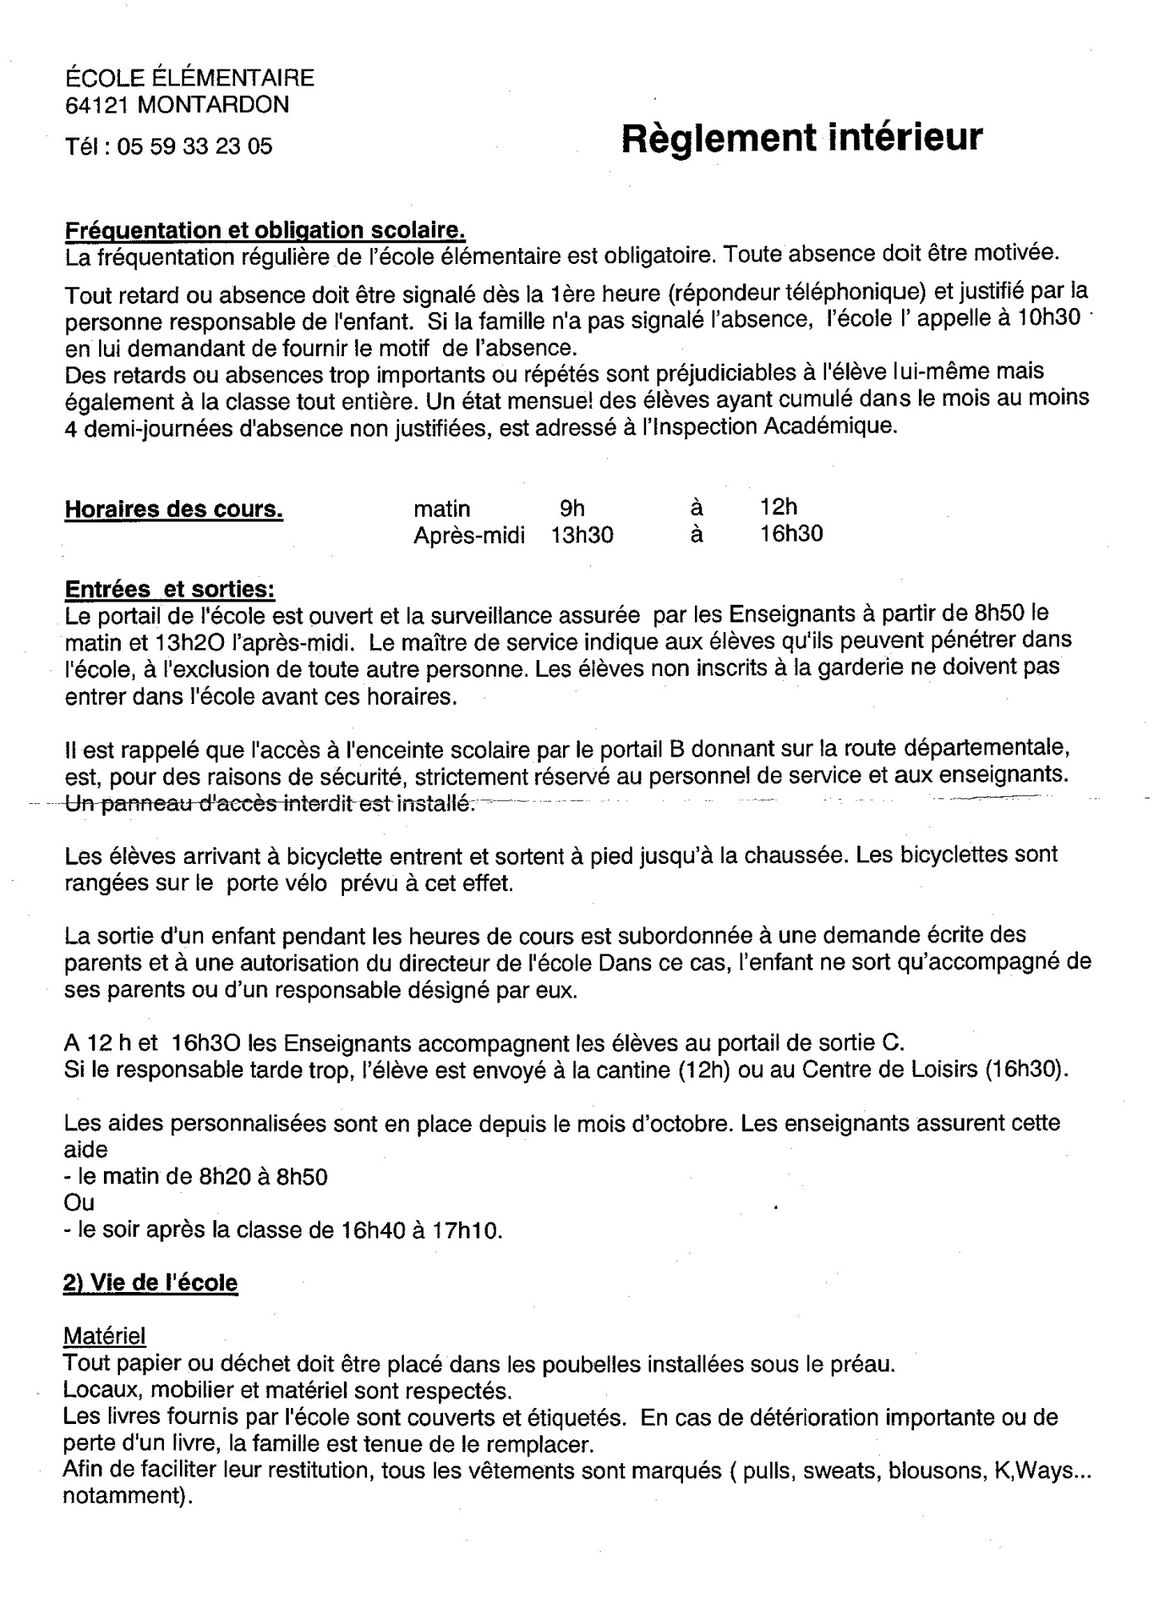 Règlement Intérieur Ecole primaire - Association Parents d'Elèves Montardon